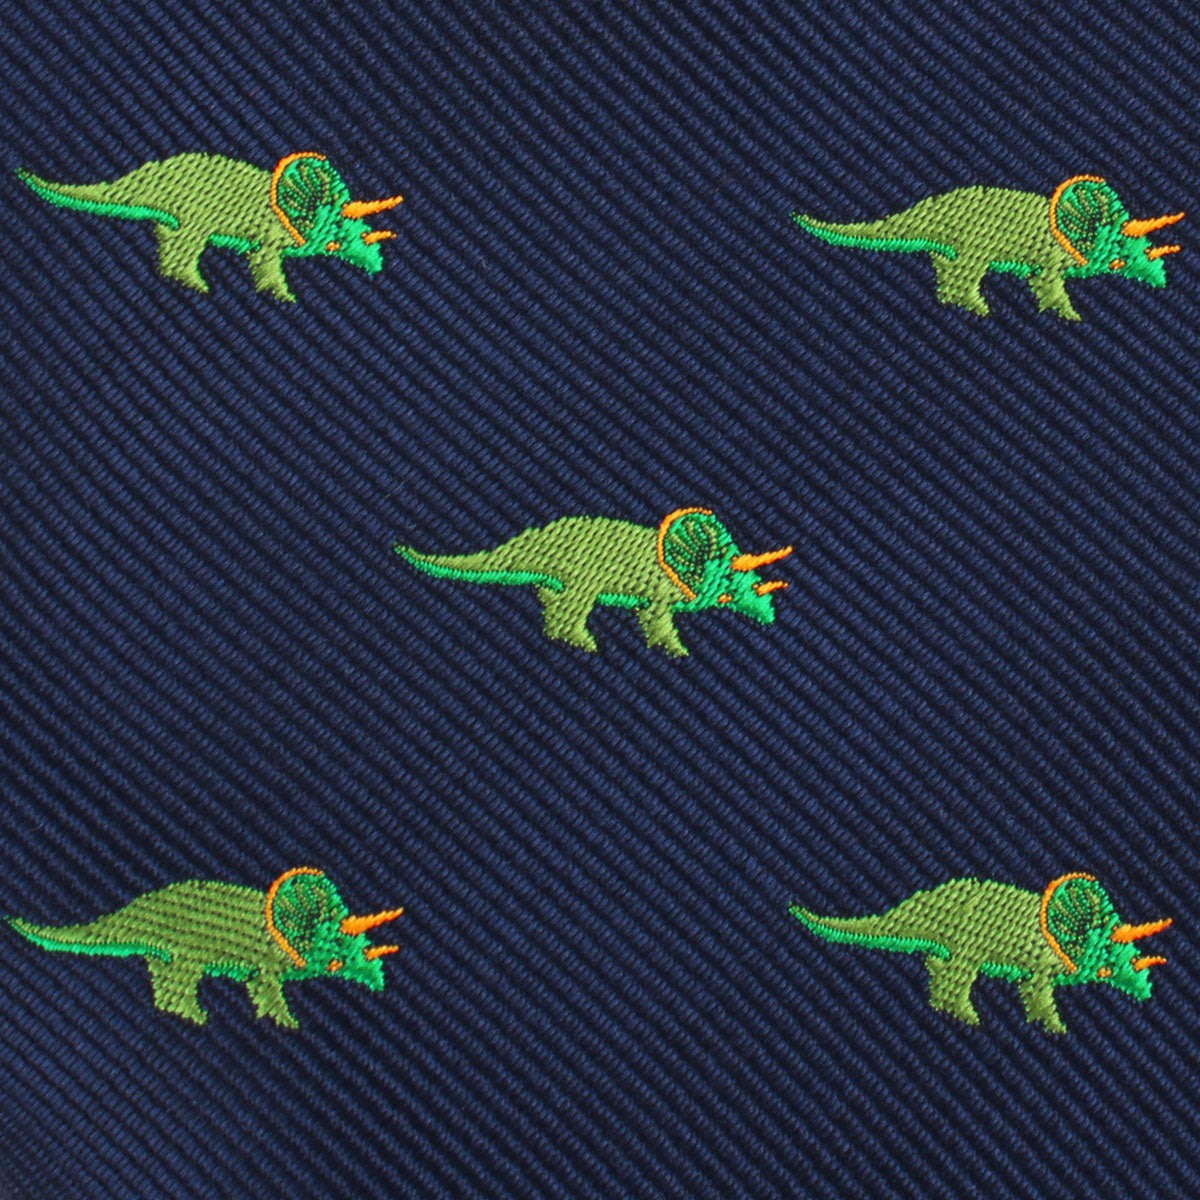 Triceratops Dinosaur Self Bow Tie Fabric